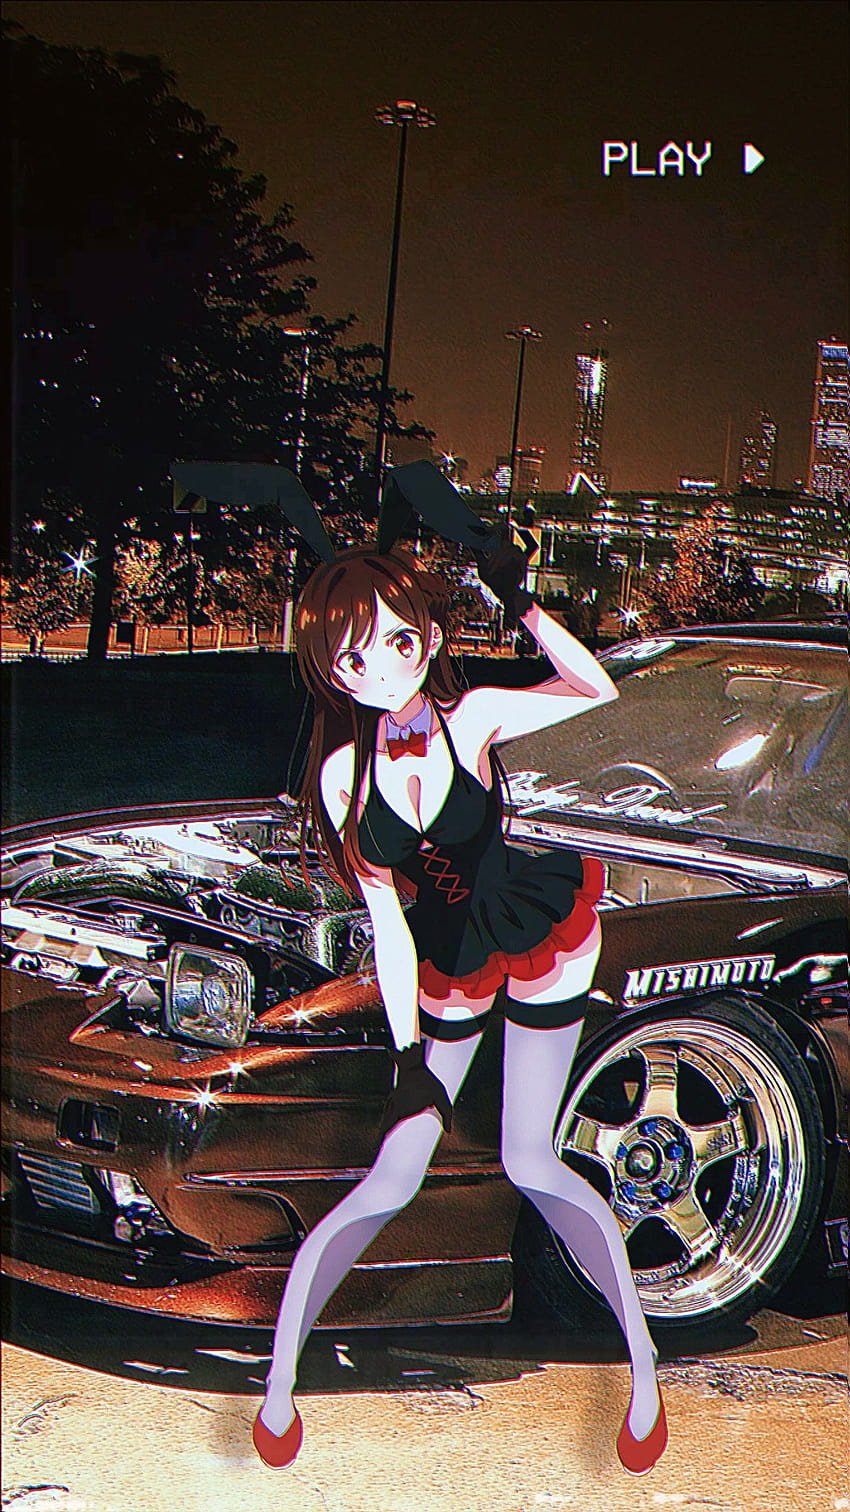 Jdm and anime girl | Best jdm cars, Art cars, Jdm girls